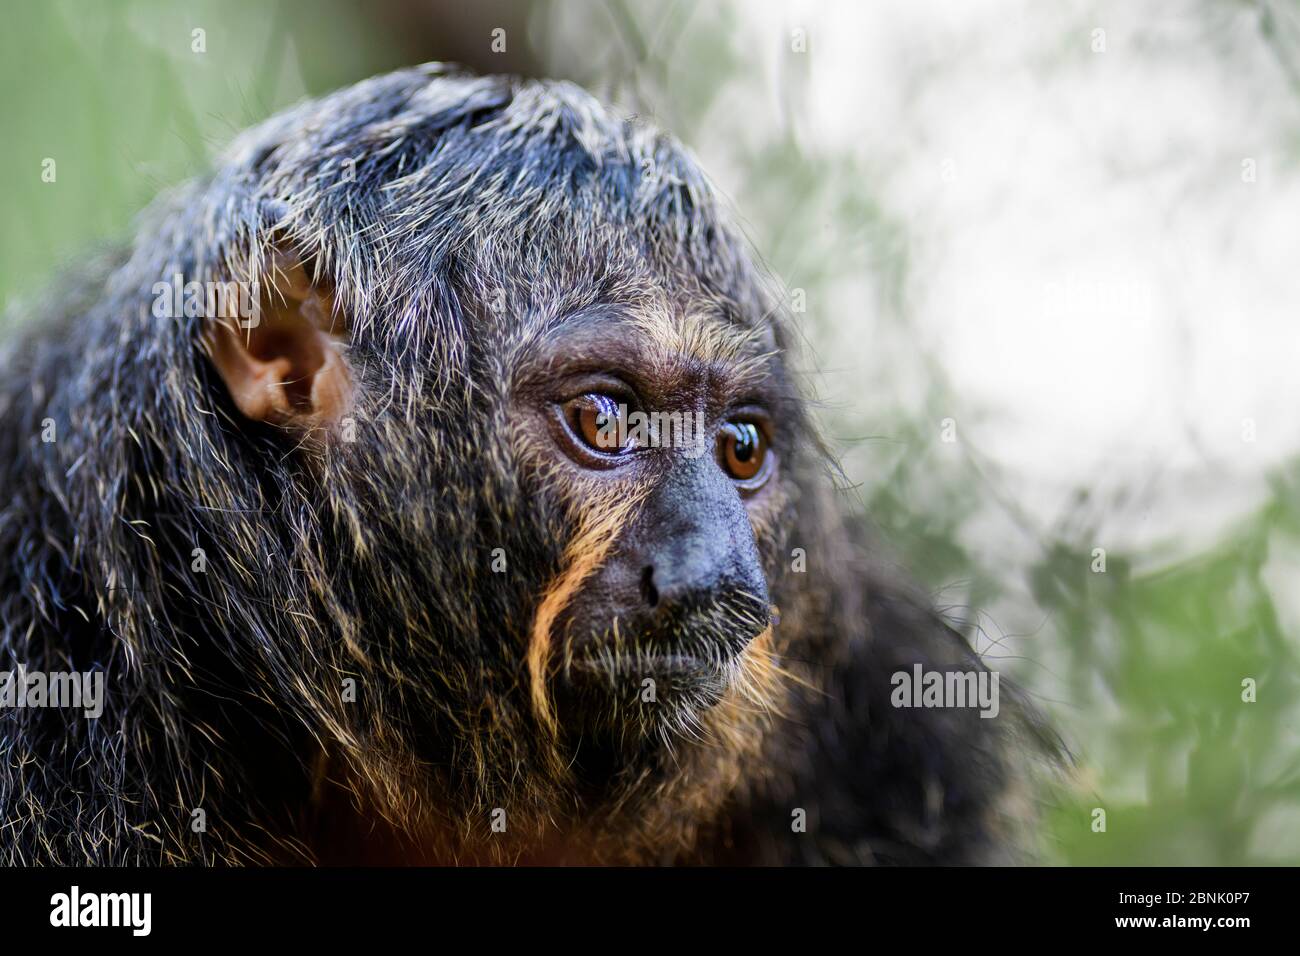 Guianan Saki - Pithecia pithecia, hermoso y raro primate tímido de los bosques tropicales de América del Sur, Brasil. Foto de stock